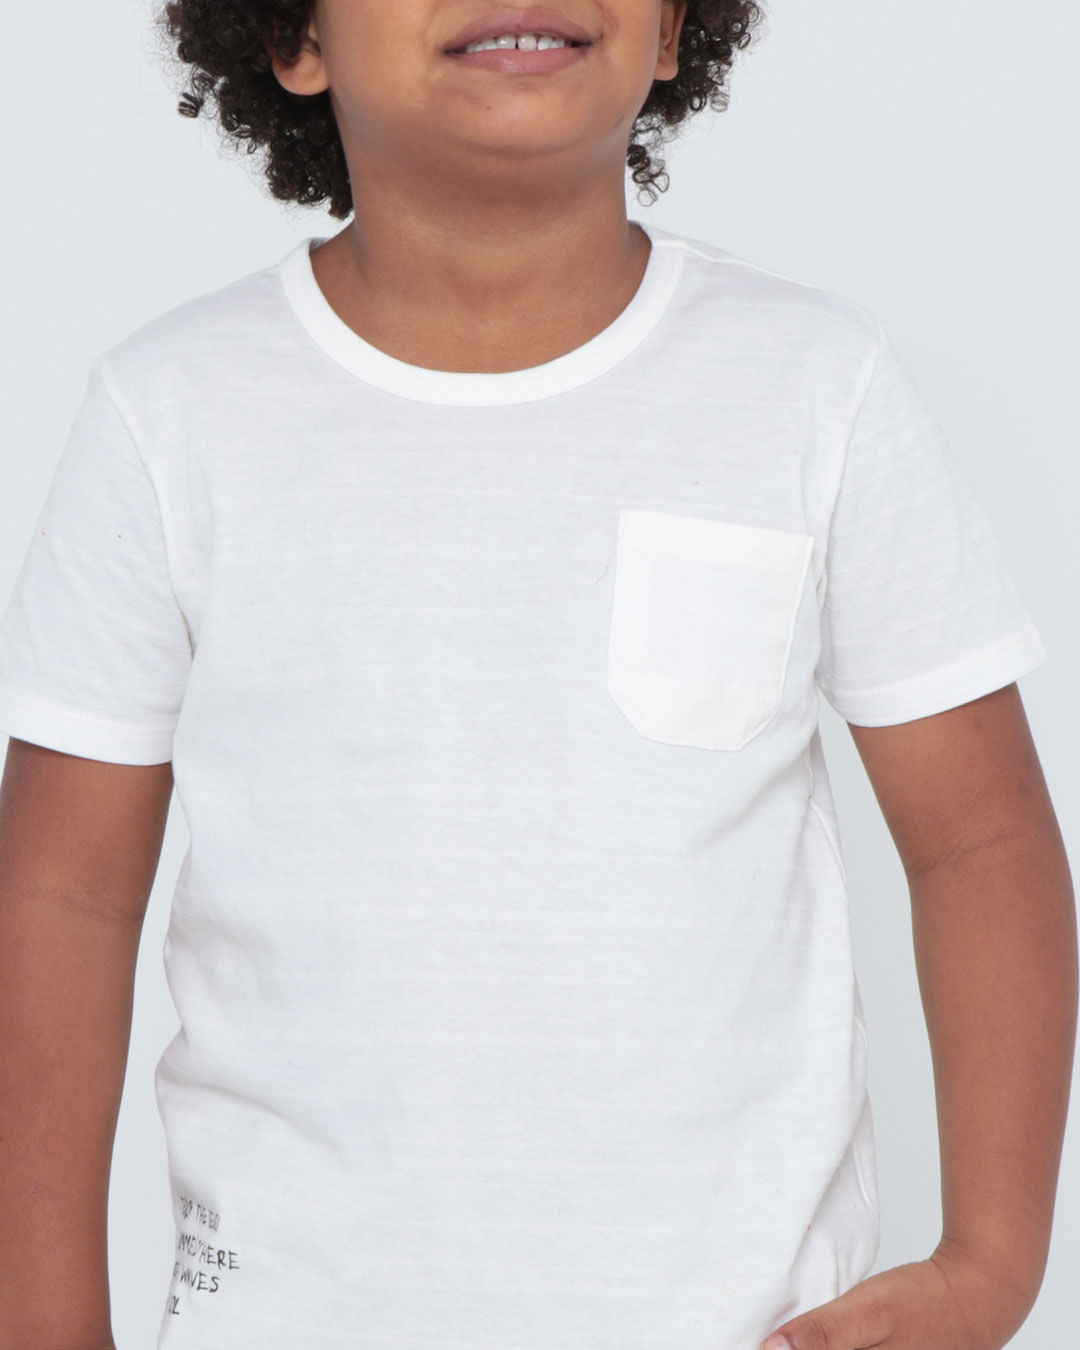 Camiseta-101187-Mc-M410-Spor---Off-White